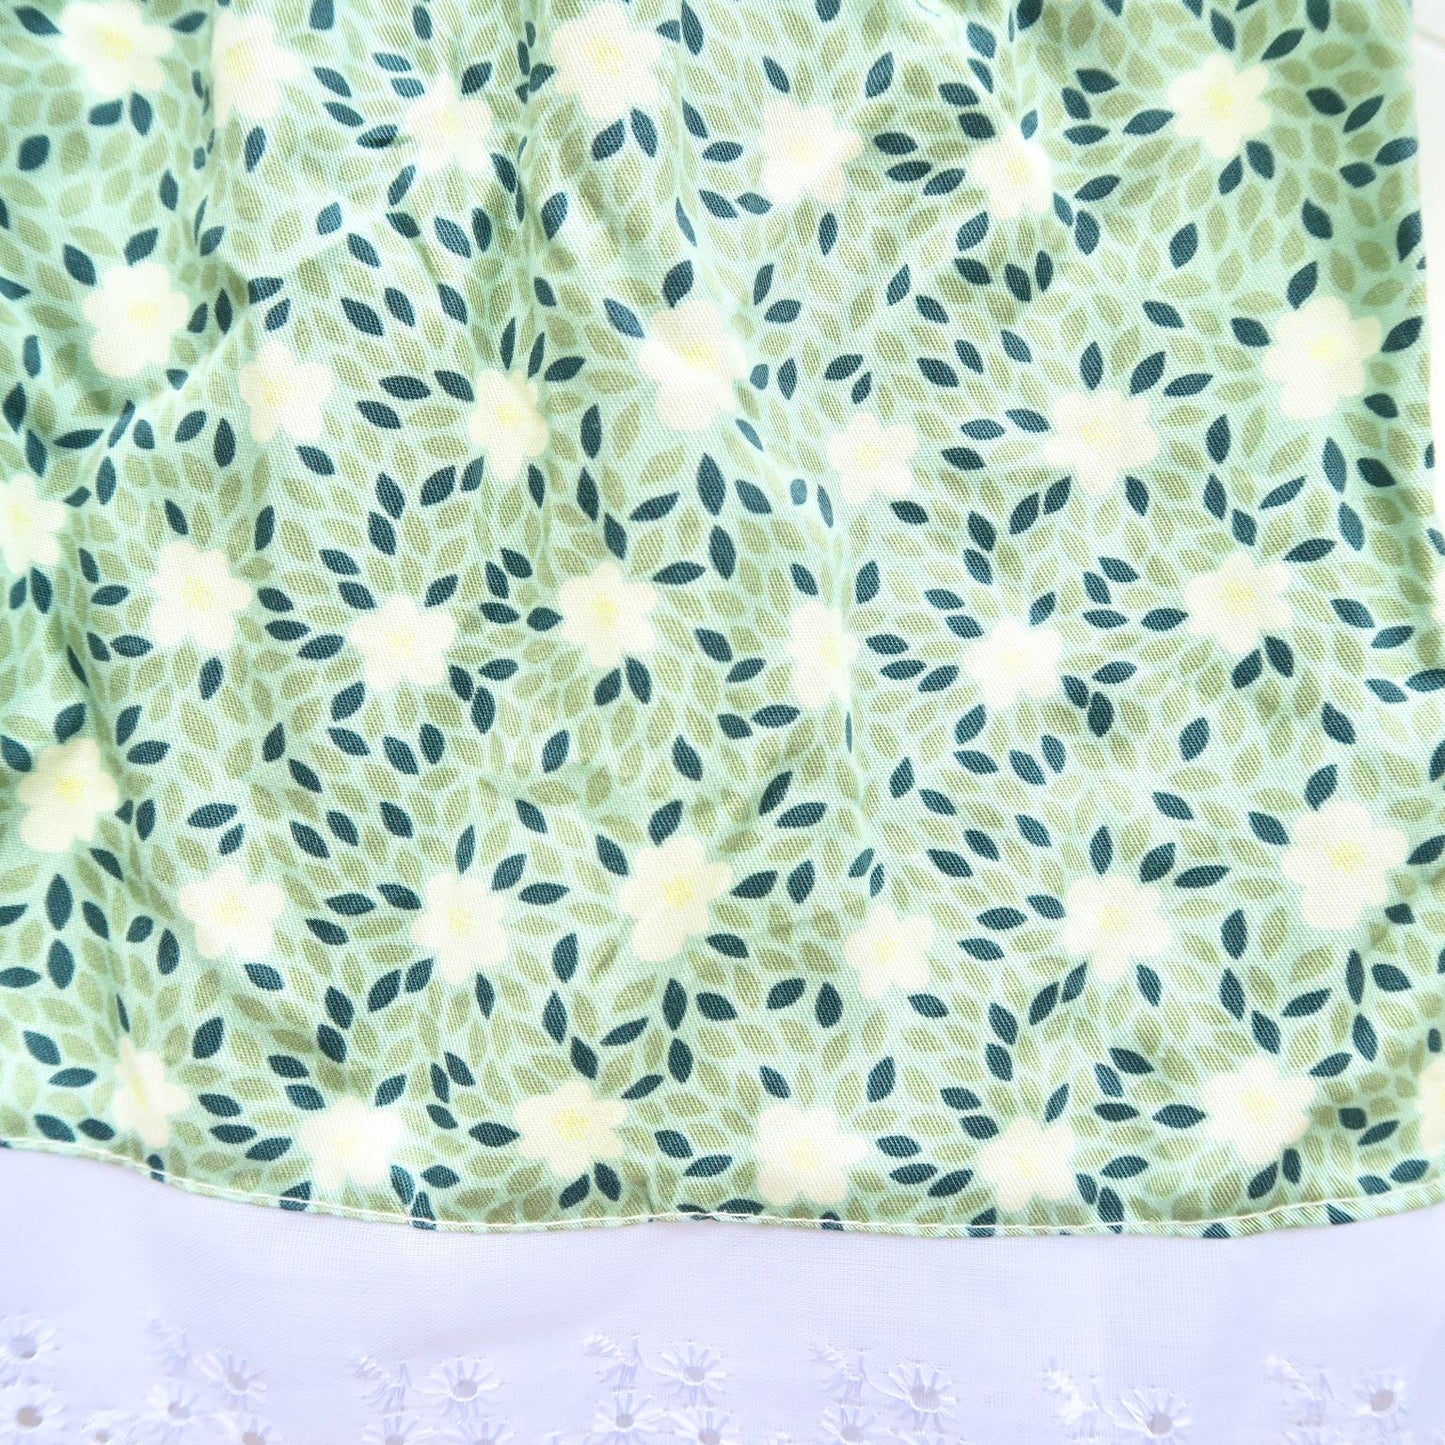 Periwinkle Dress in Mint Petal Flower Print - Lil' Tati